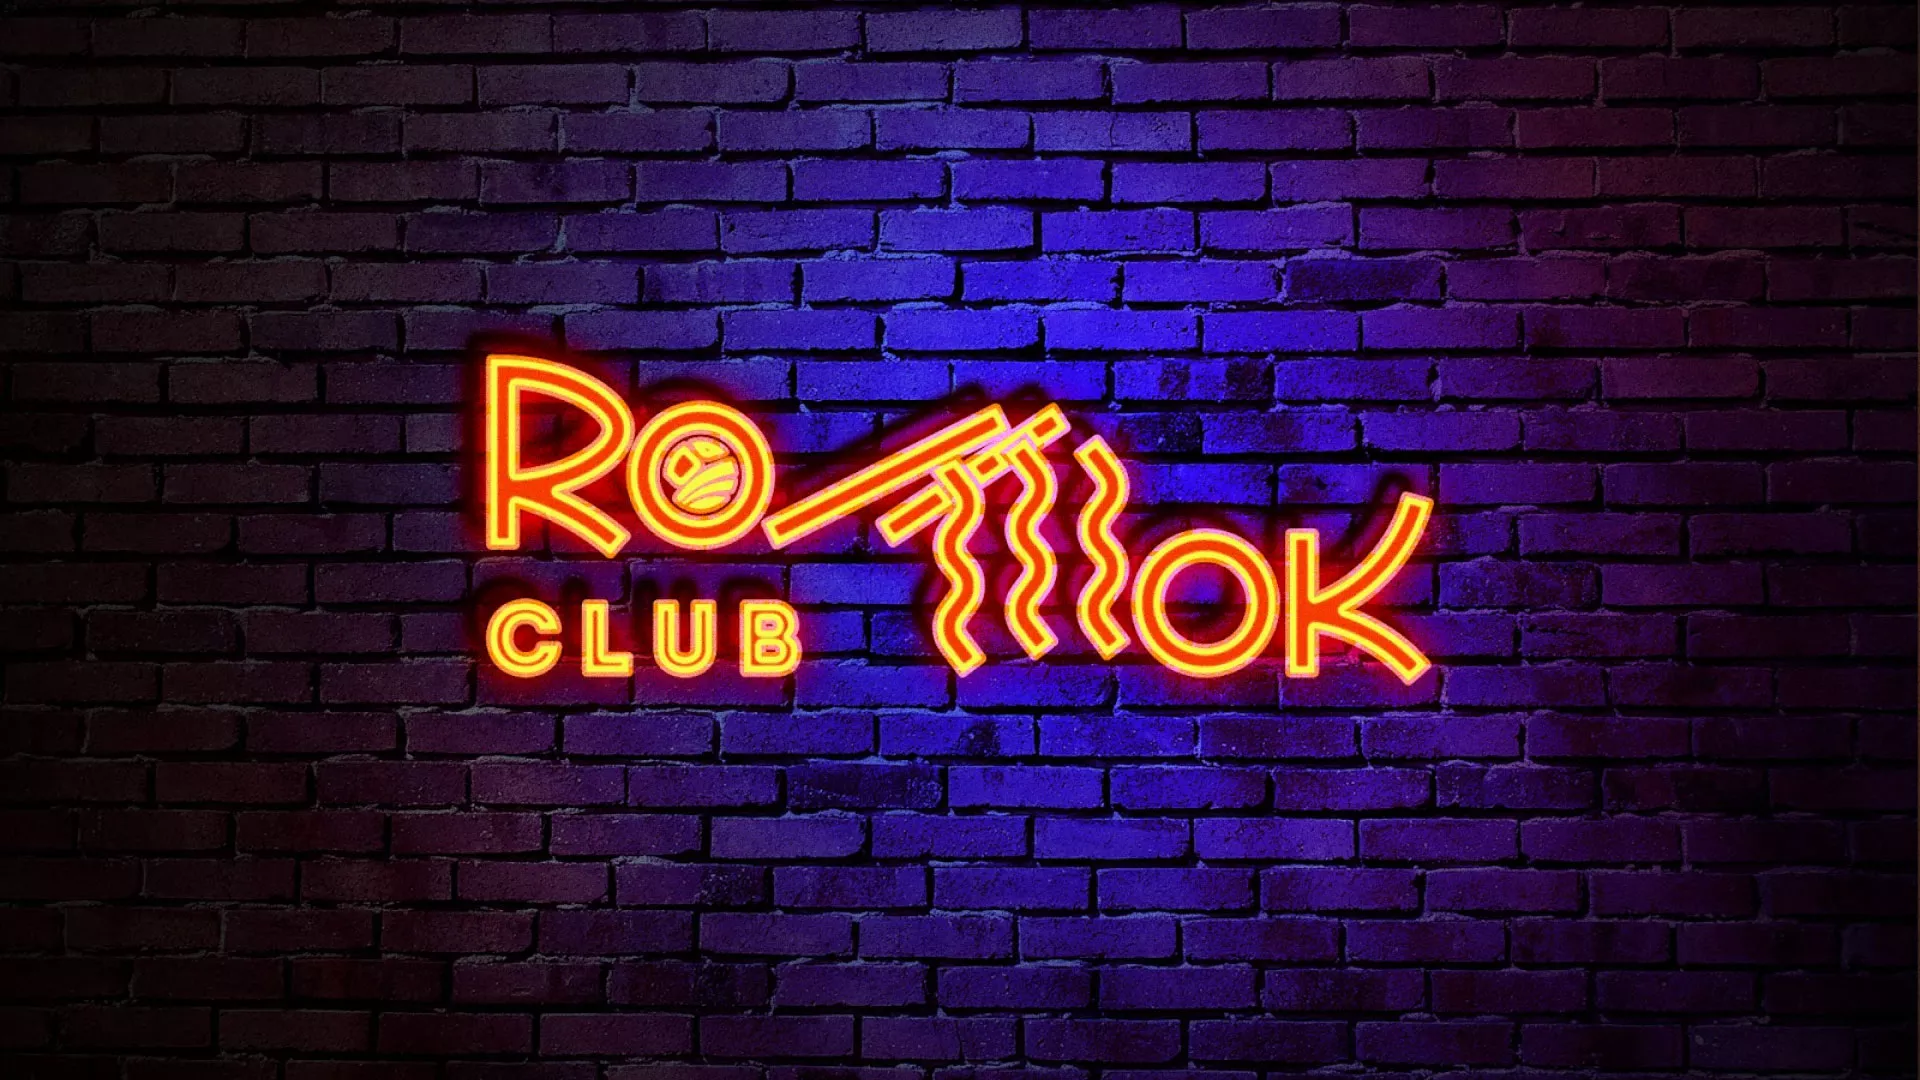 Разработка интерьерной вывески суши-бара «Roll Wok Club» в Чкаловском